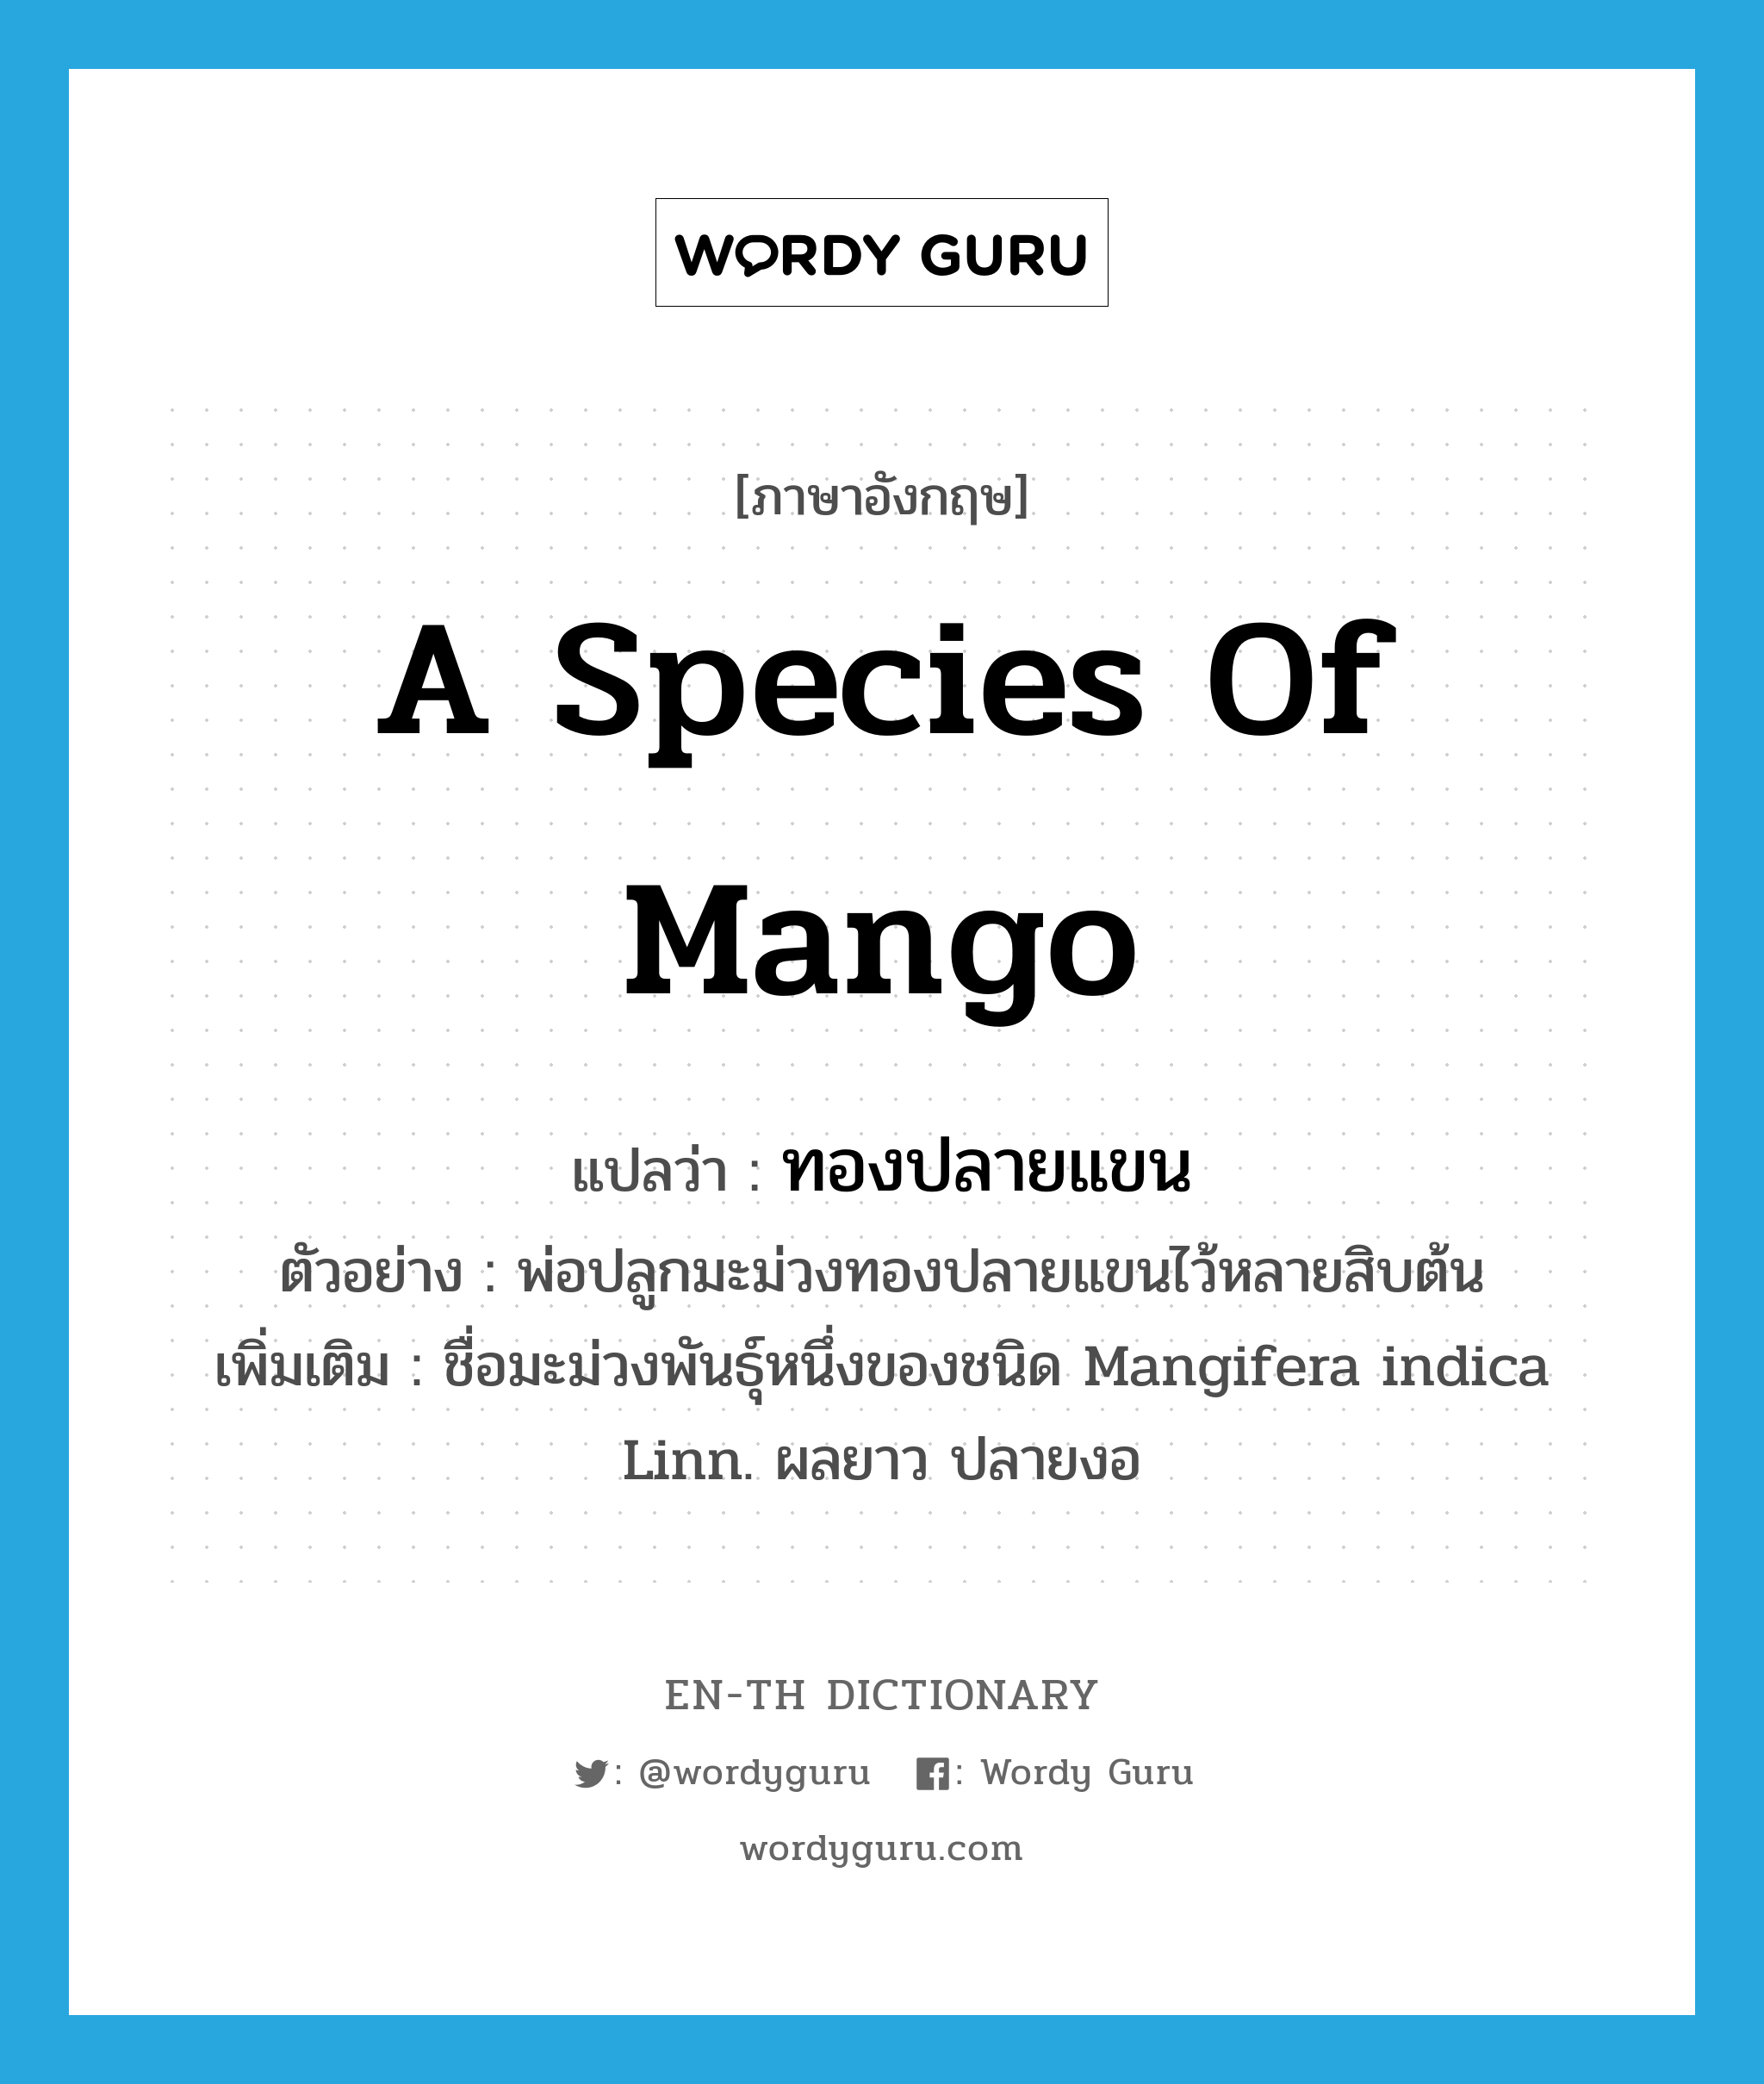 ทองปลายแขน ภาษาอังกฤษ?, คำศัพท์ภาษาอังกฤษ ทองปลายแขน แปลว่า a species of mango ประเภท N ตัวอย่าง พ่อปลูกมะม่วงทองปลายแขนไว้หลายสิบต้น เพิ่มเติม ชื่อมะม่วงพันธุ์หนึ่งของชนิด Mangifera indica Linn. ผลยาว ปลายงอ หมวด N